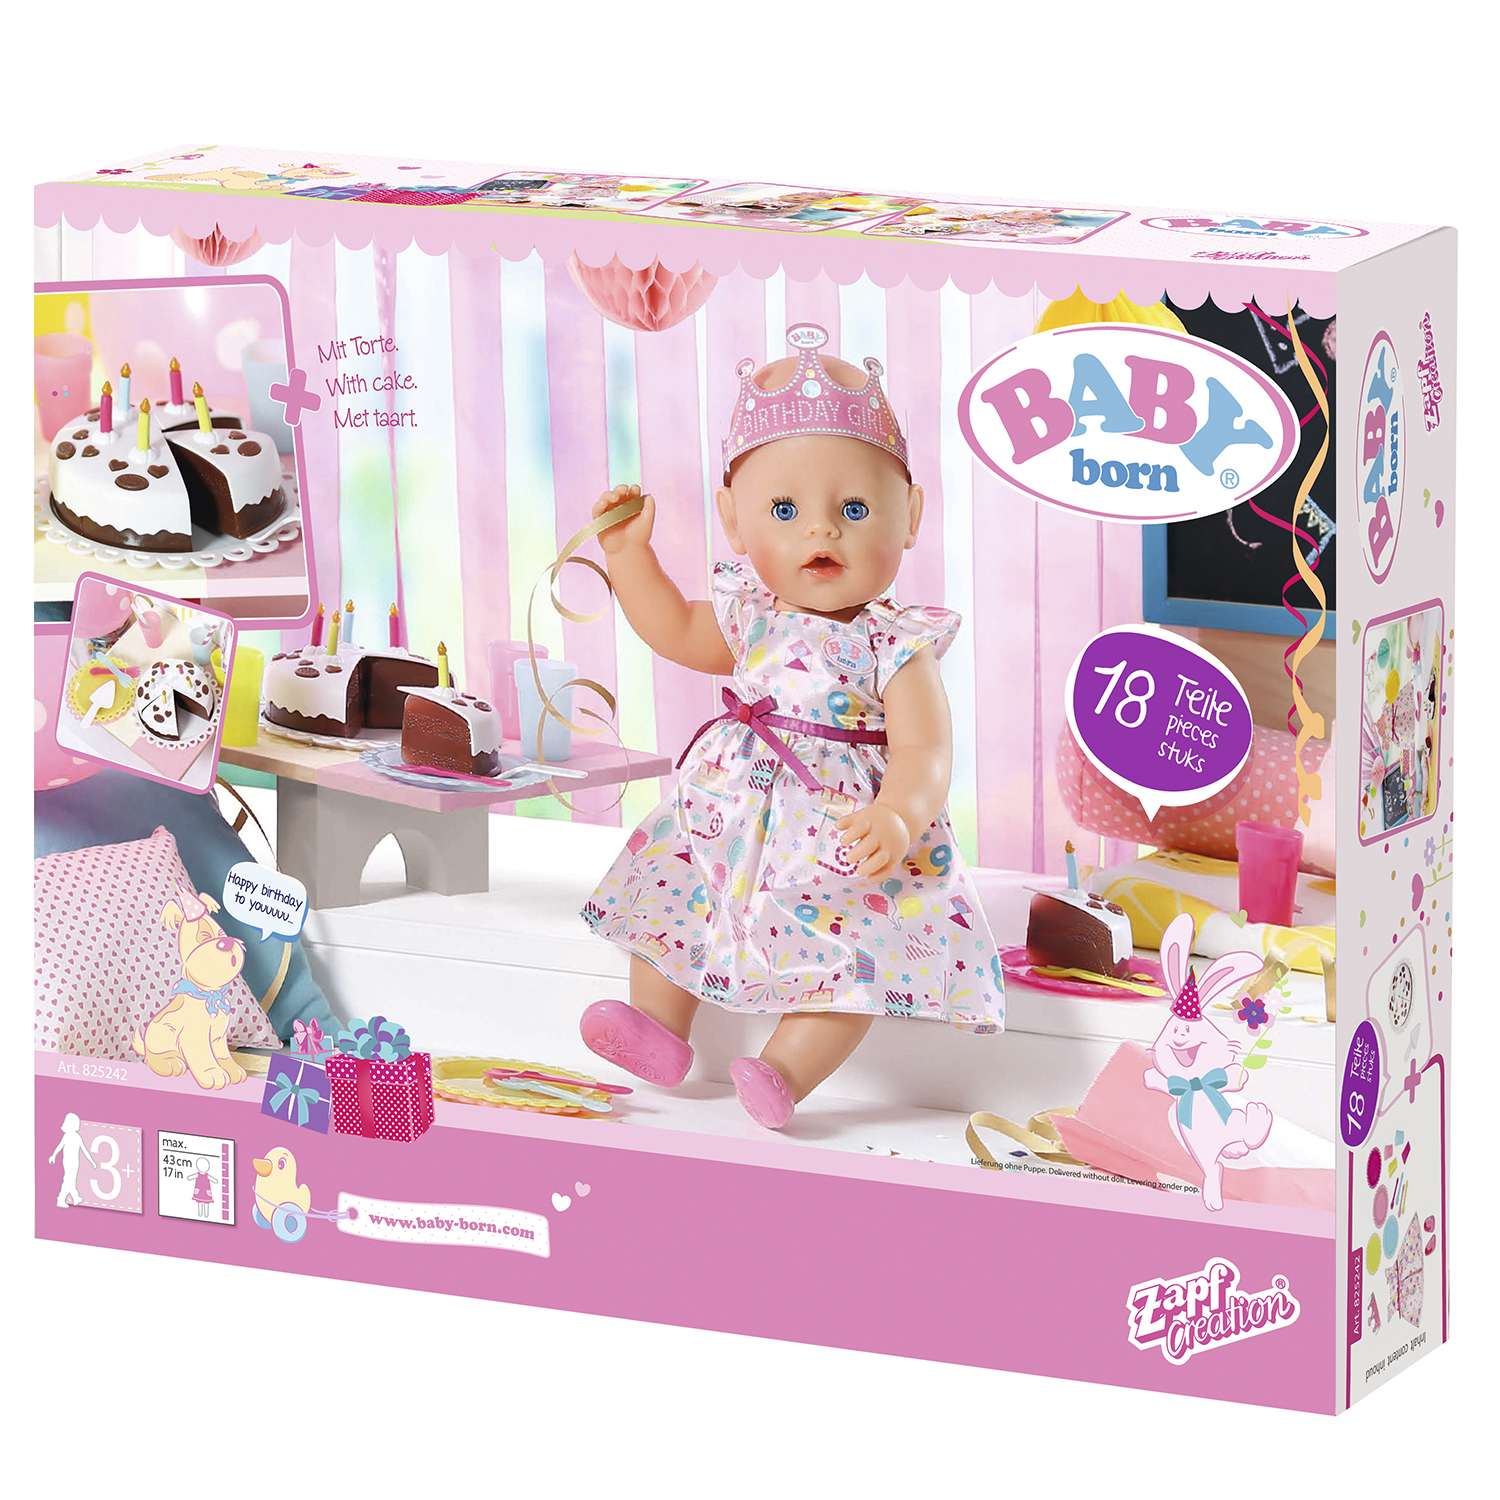 Набор для куклы Zapf Creation Baby born Для празднования Дня рождения 825-242 825-242 - фото 3